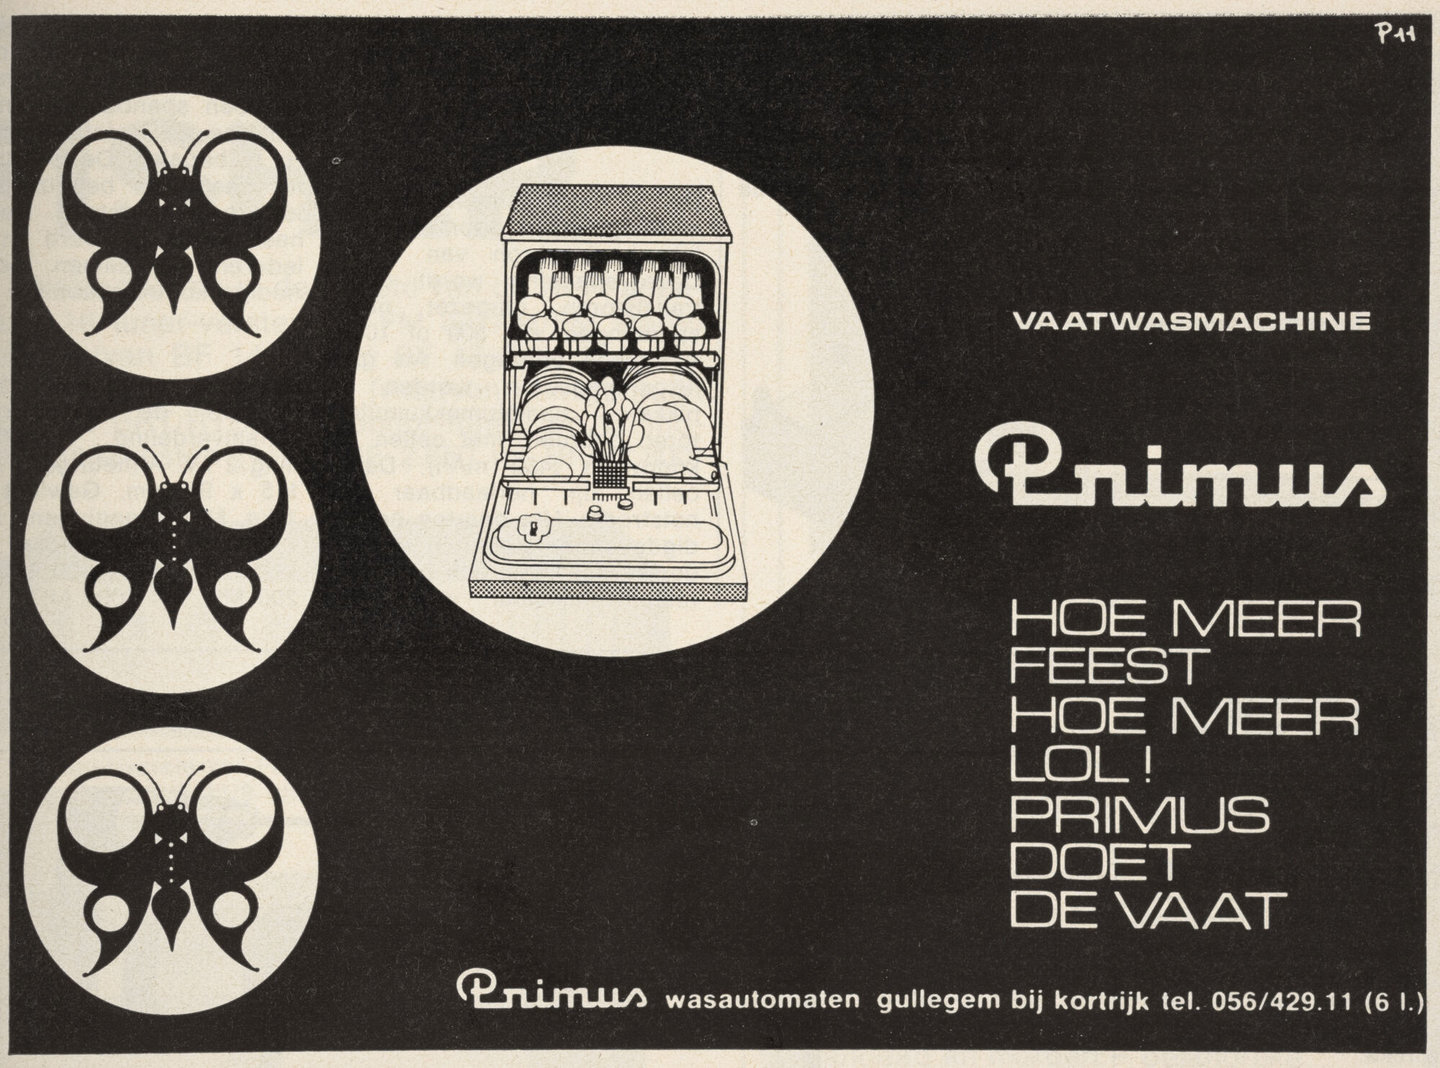 Reclame voor vaatwasmachine van het merk Primus